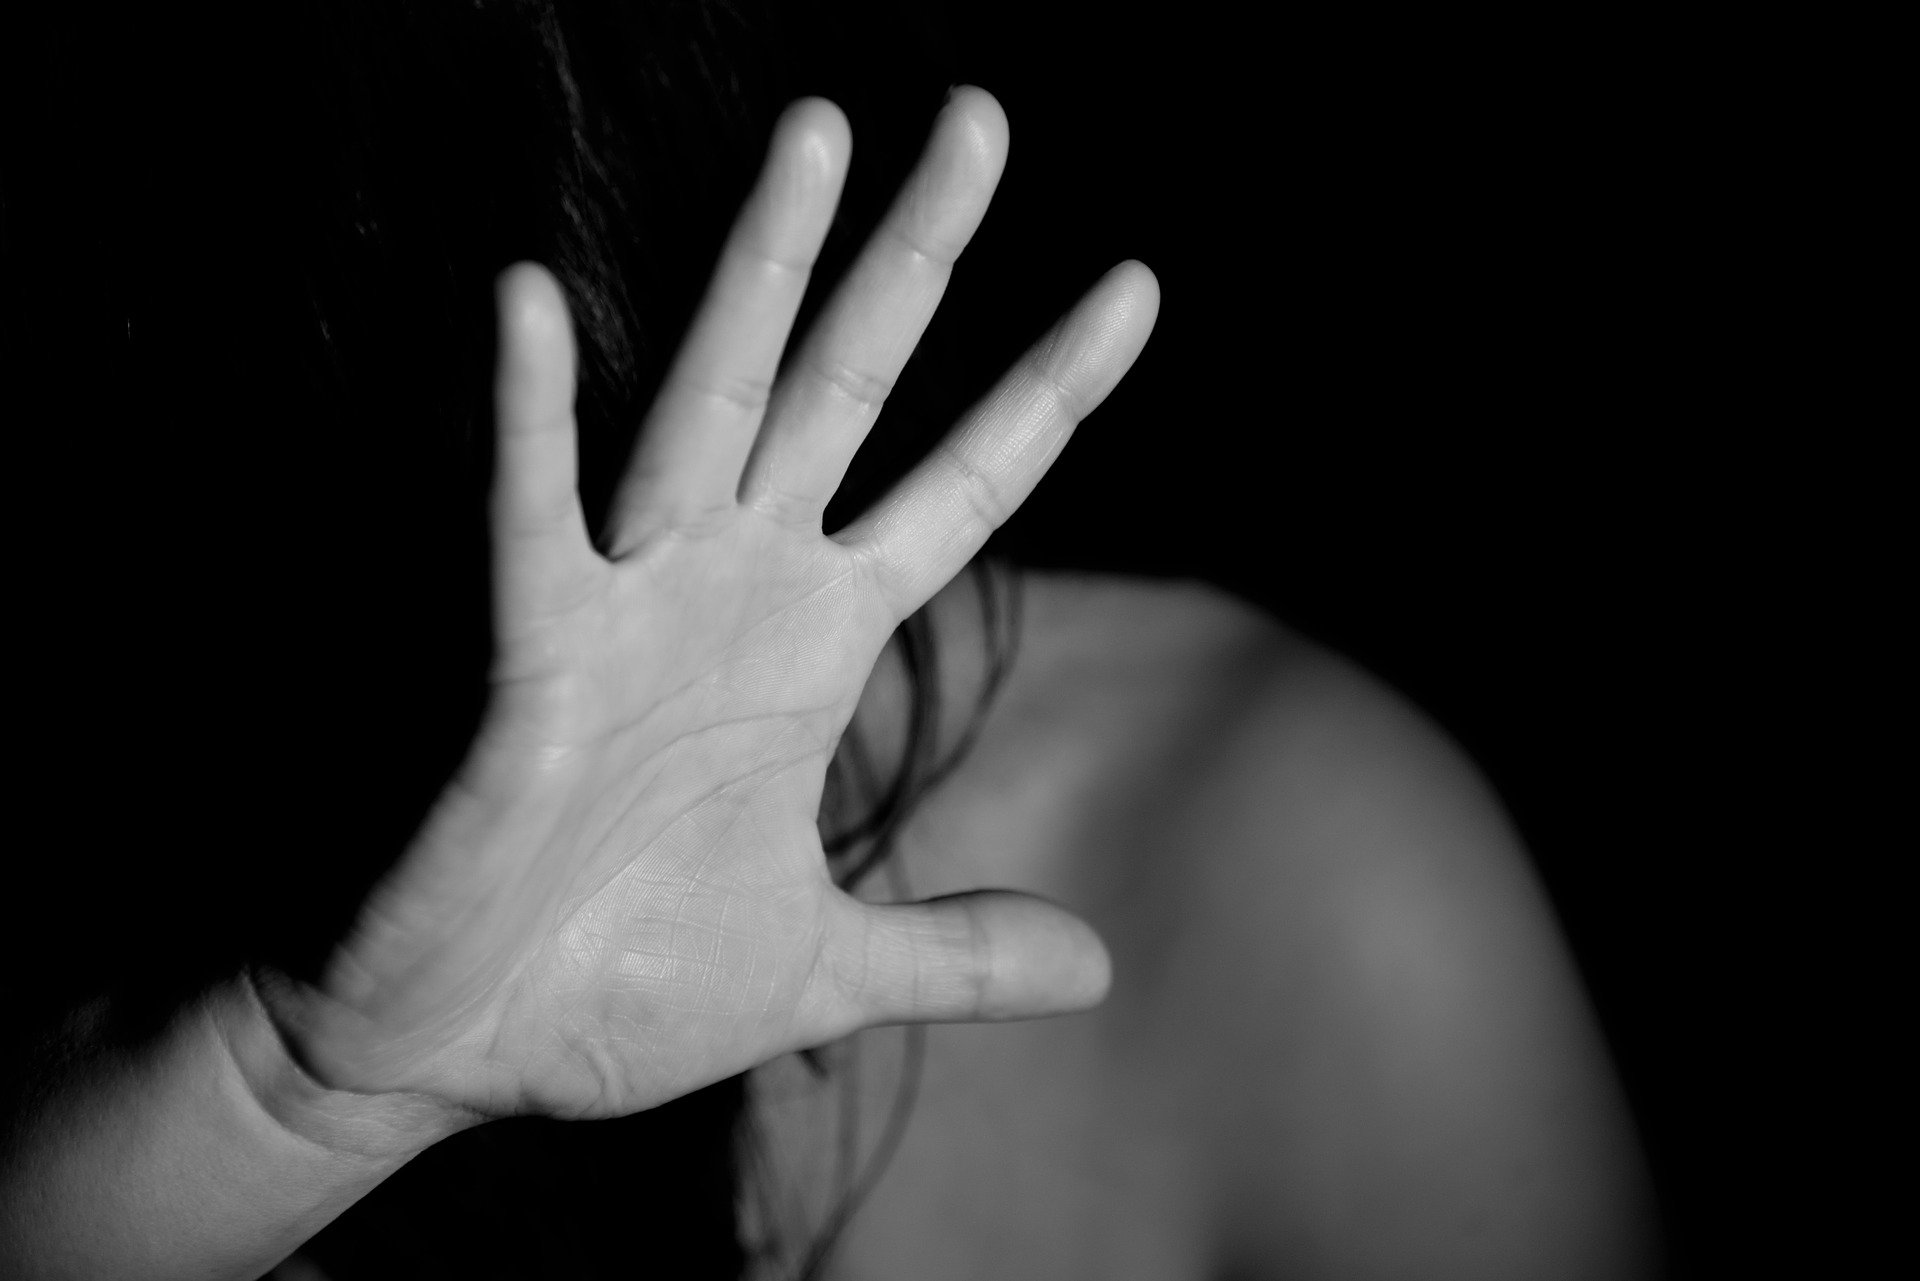 Violenza di genere, in 15 anni 121 femminicidi in Toscana